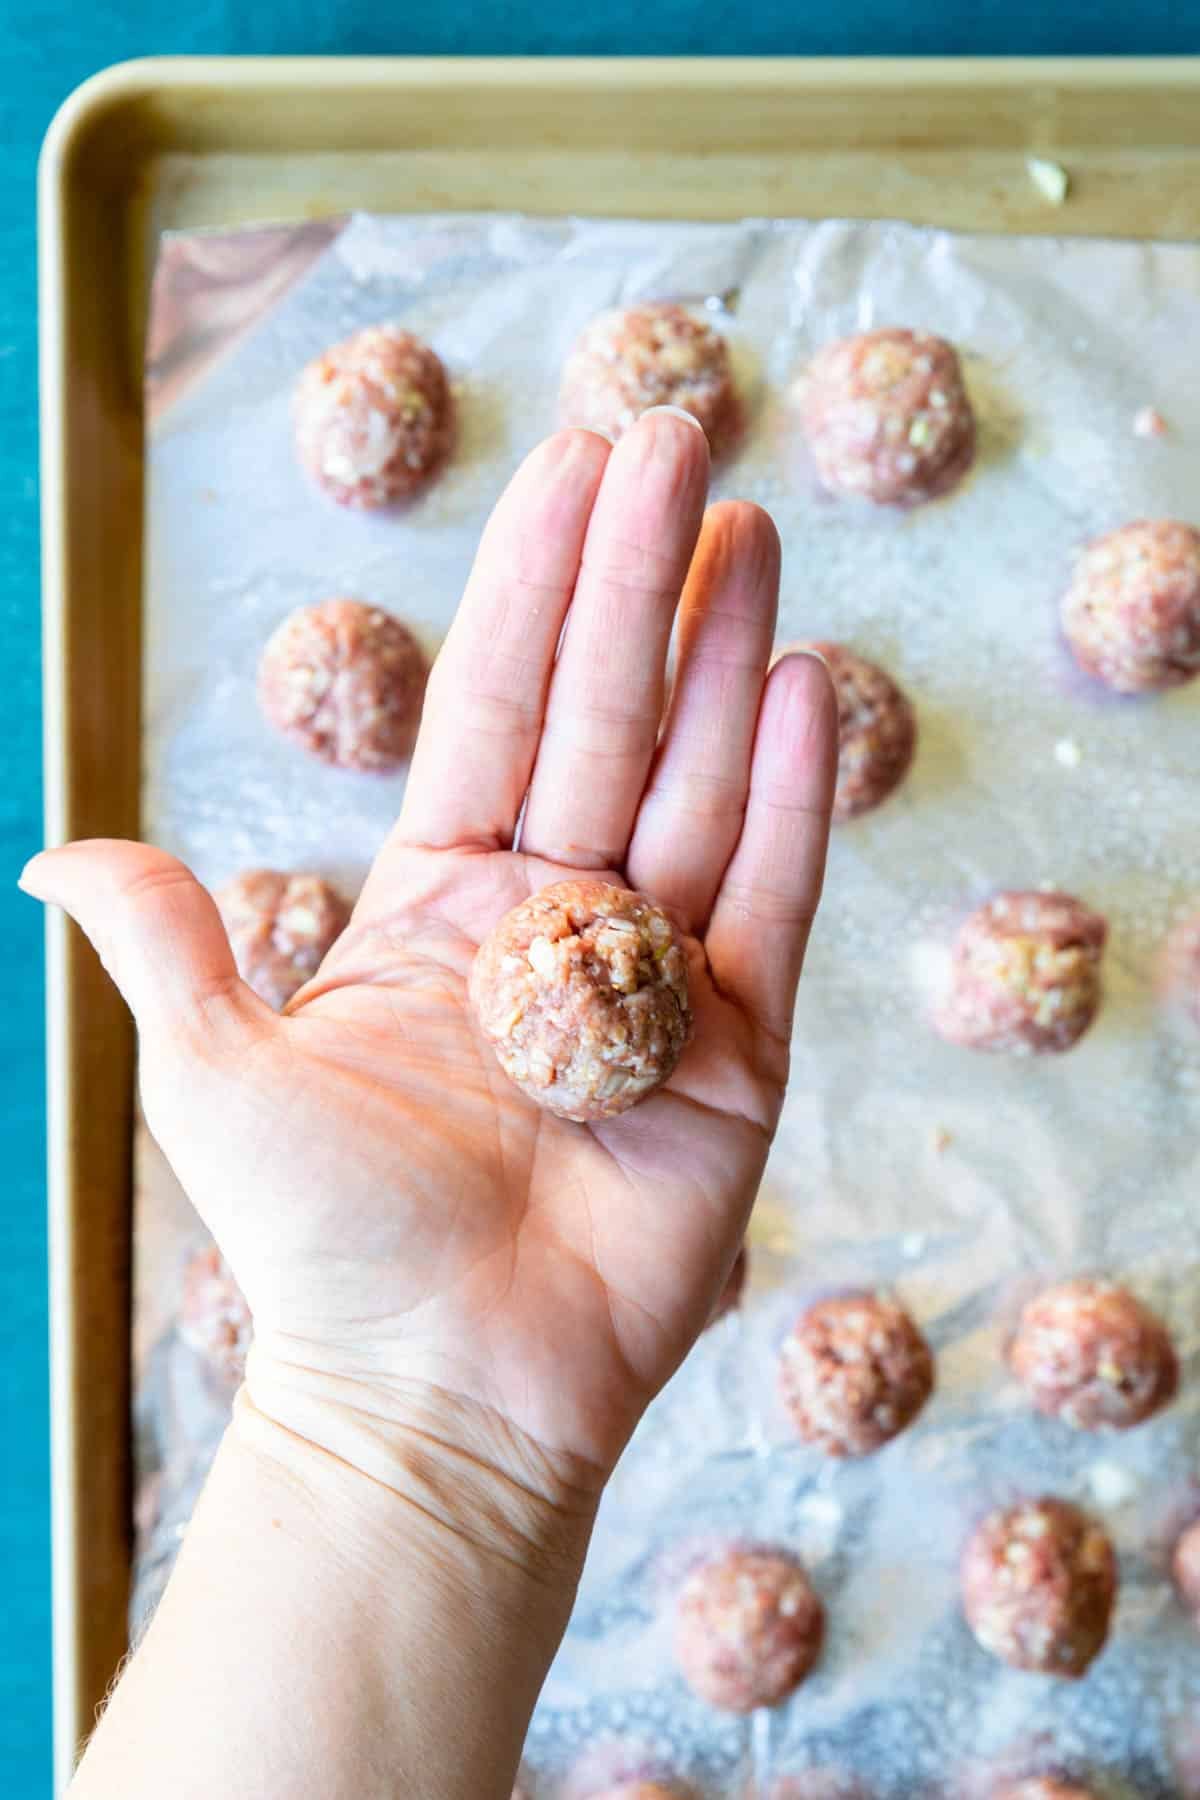 showing walnut sized meatballs